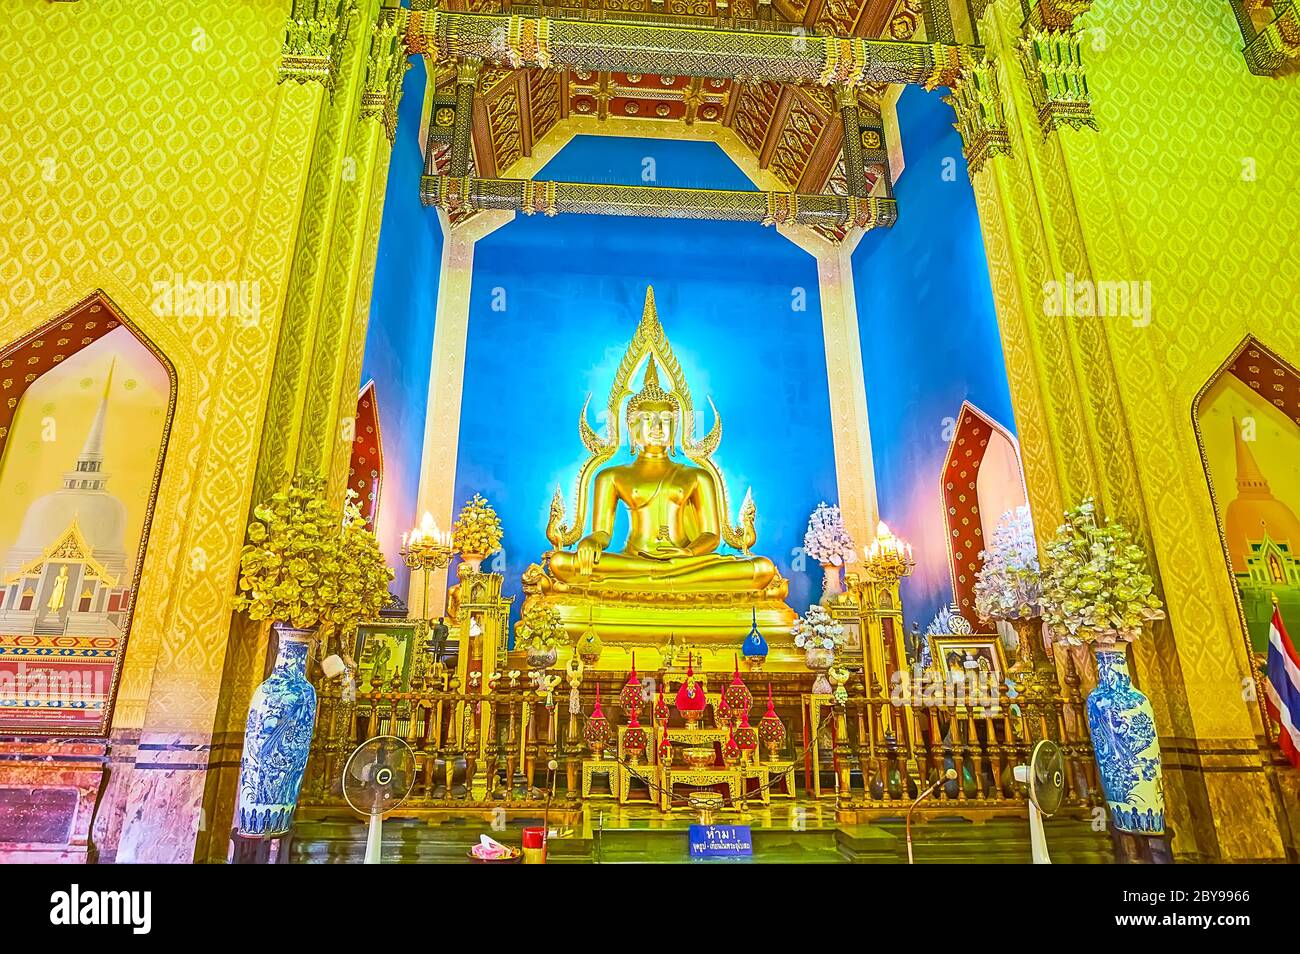 BANGKOK, THAILAND - MAY 13, 2019: The altar of Ubosot (Ordination Hall) of Wat Benchamabophit Dusitvanaram Marble Temple with golden Buddha Image, on Stock Photo